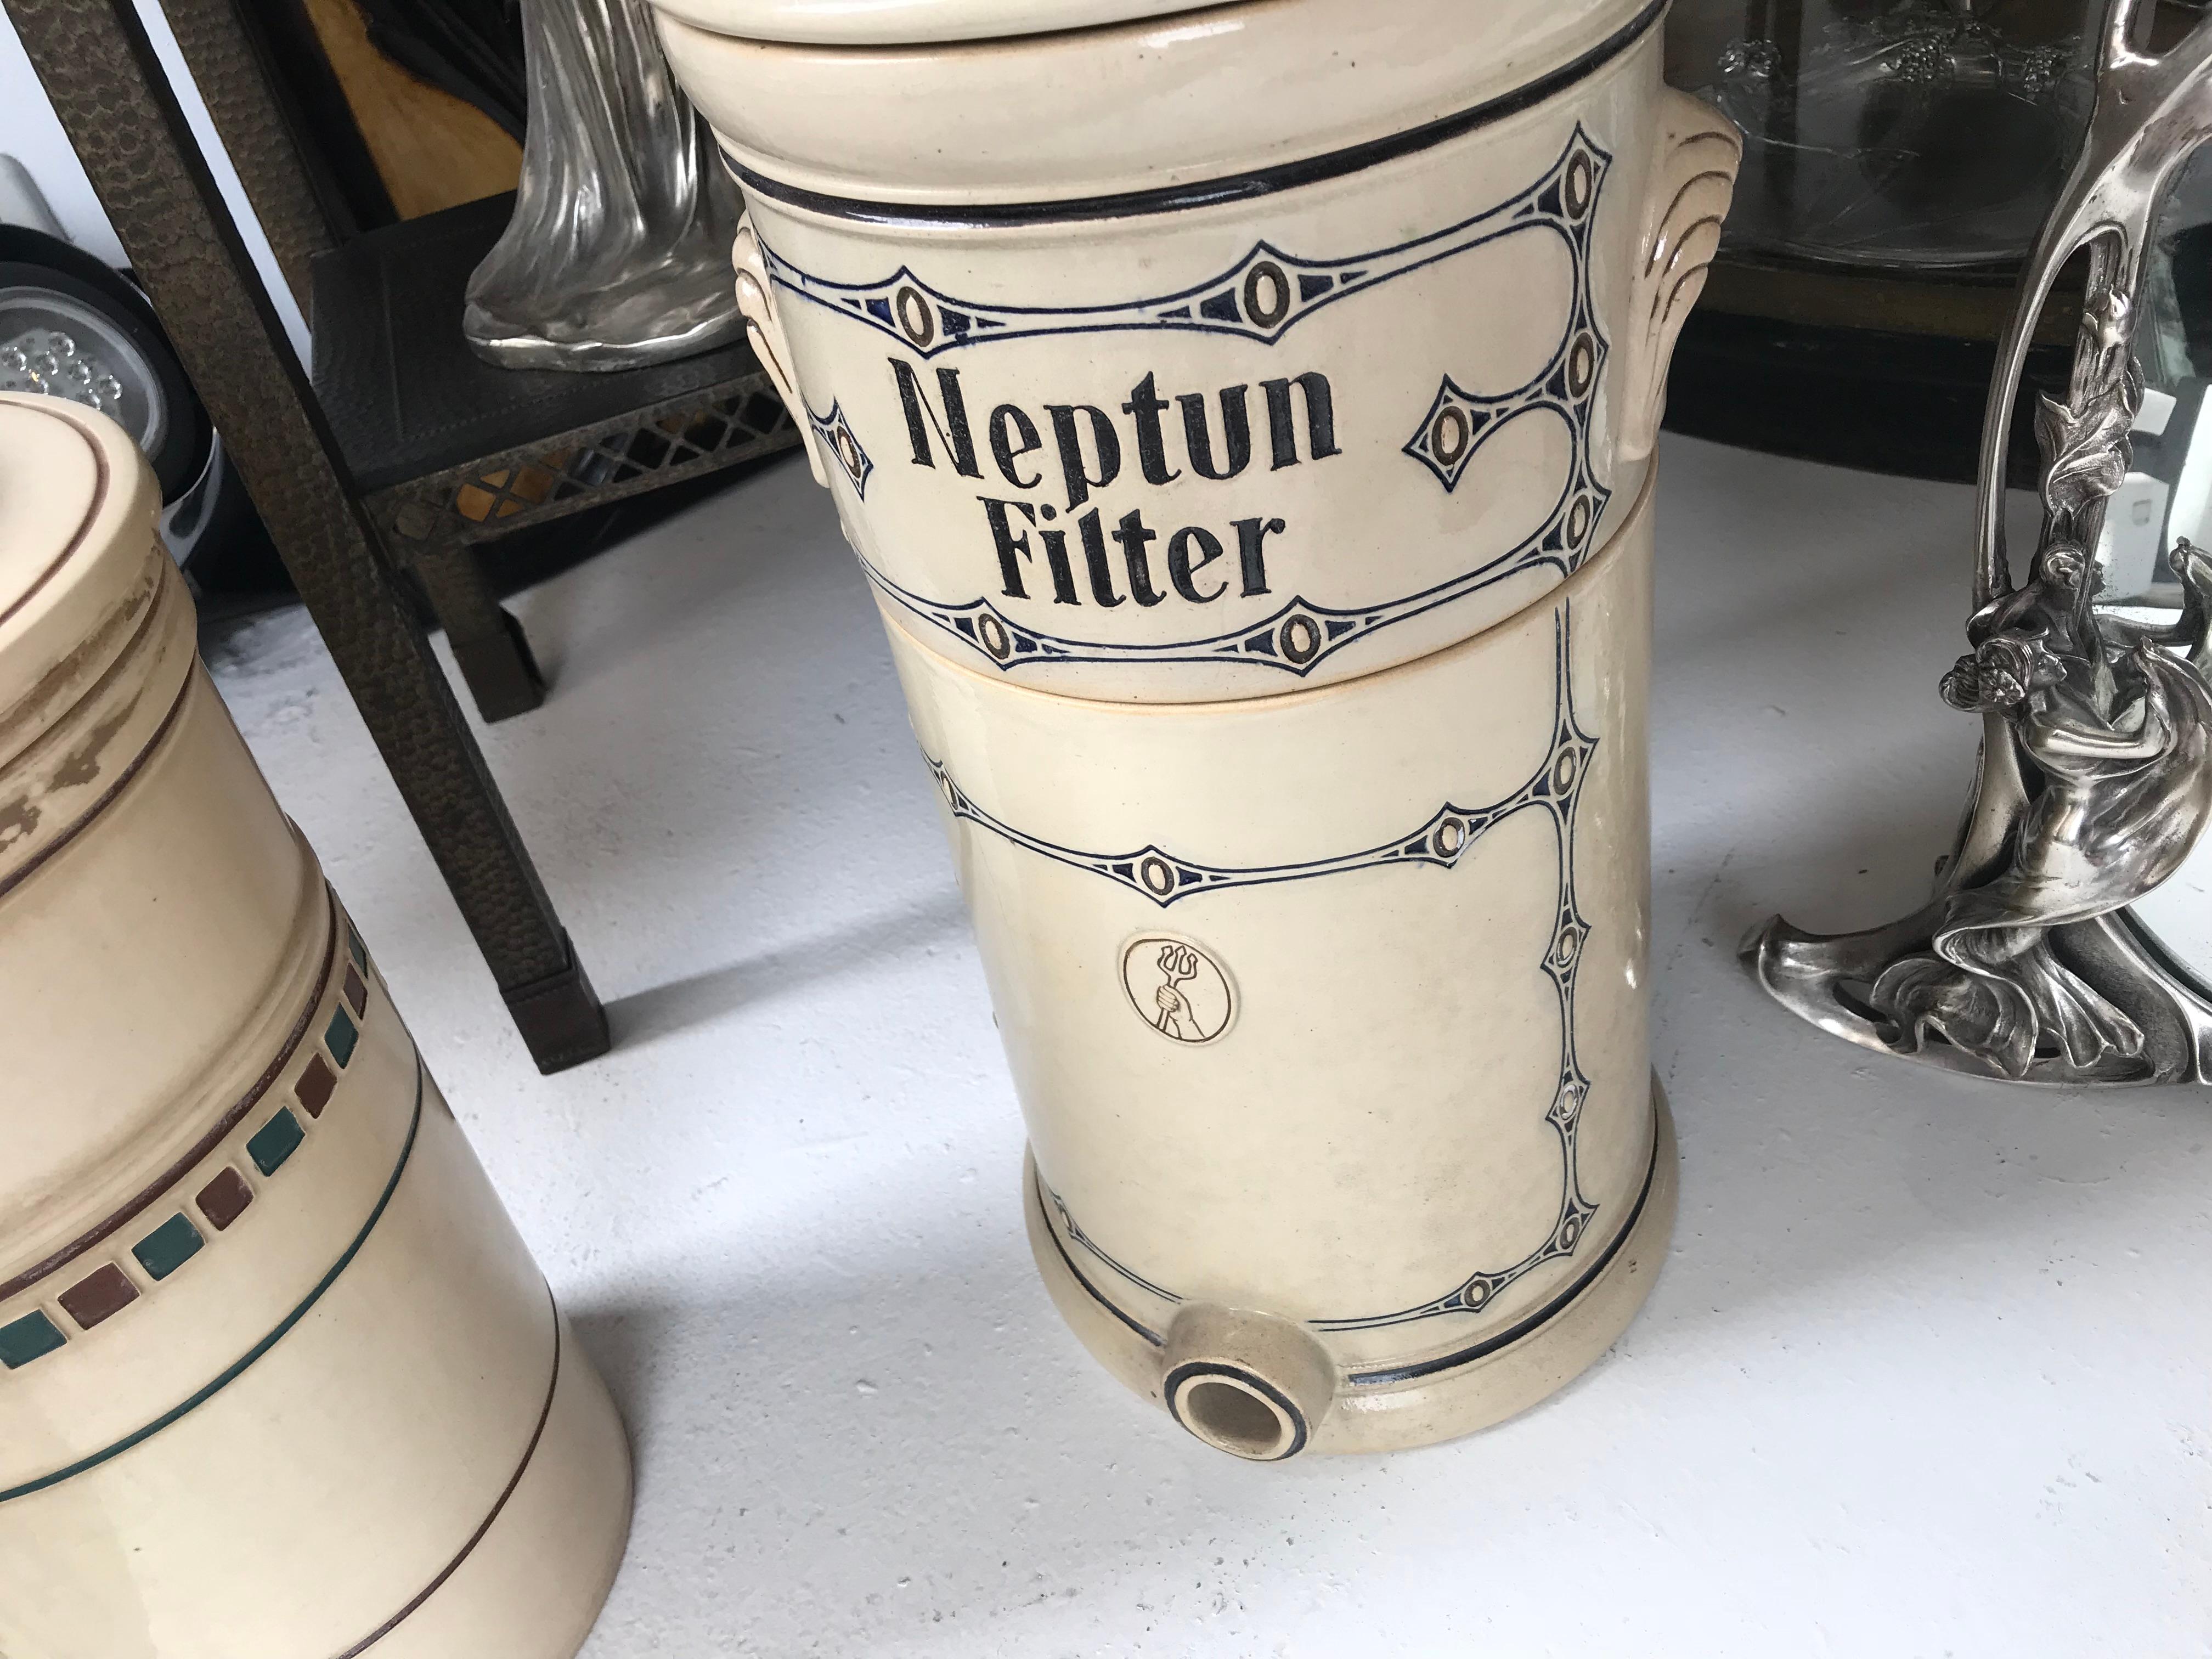 Neptun Filter, Jugendstil, Art Nouveau, Liberty, 1900 For Sale 4